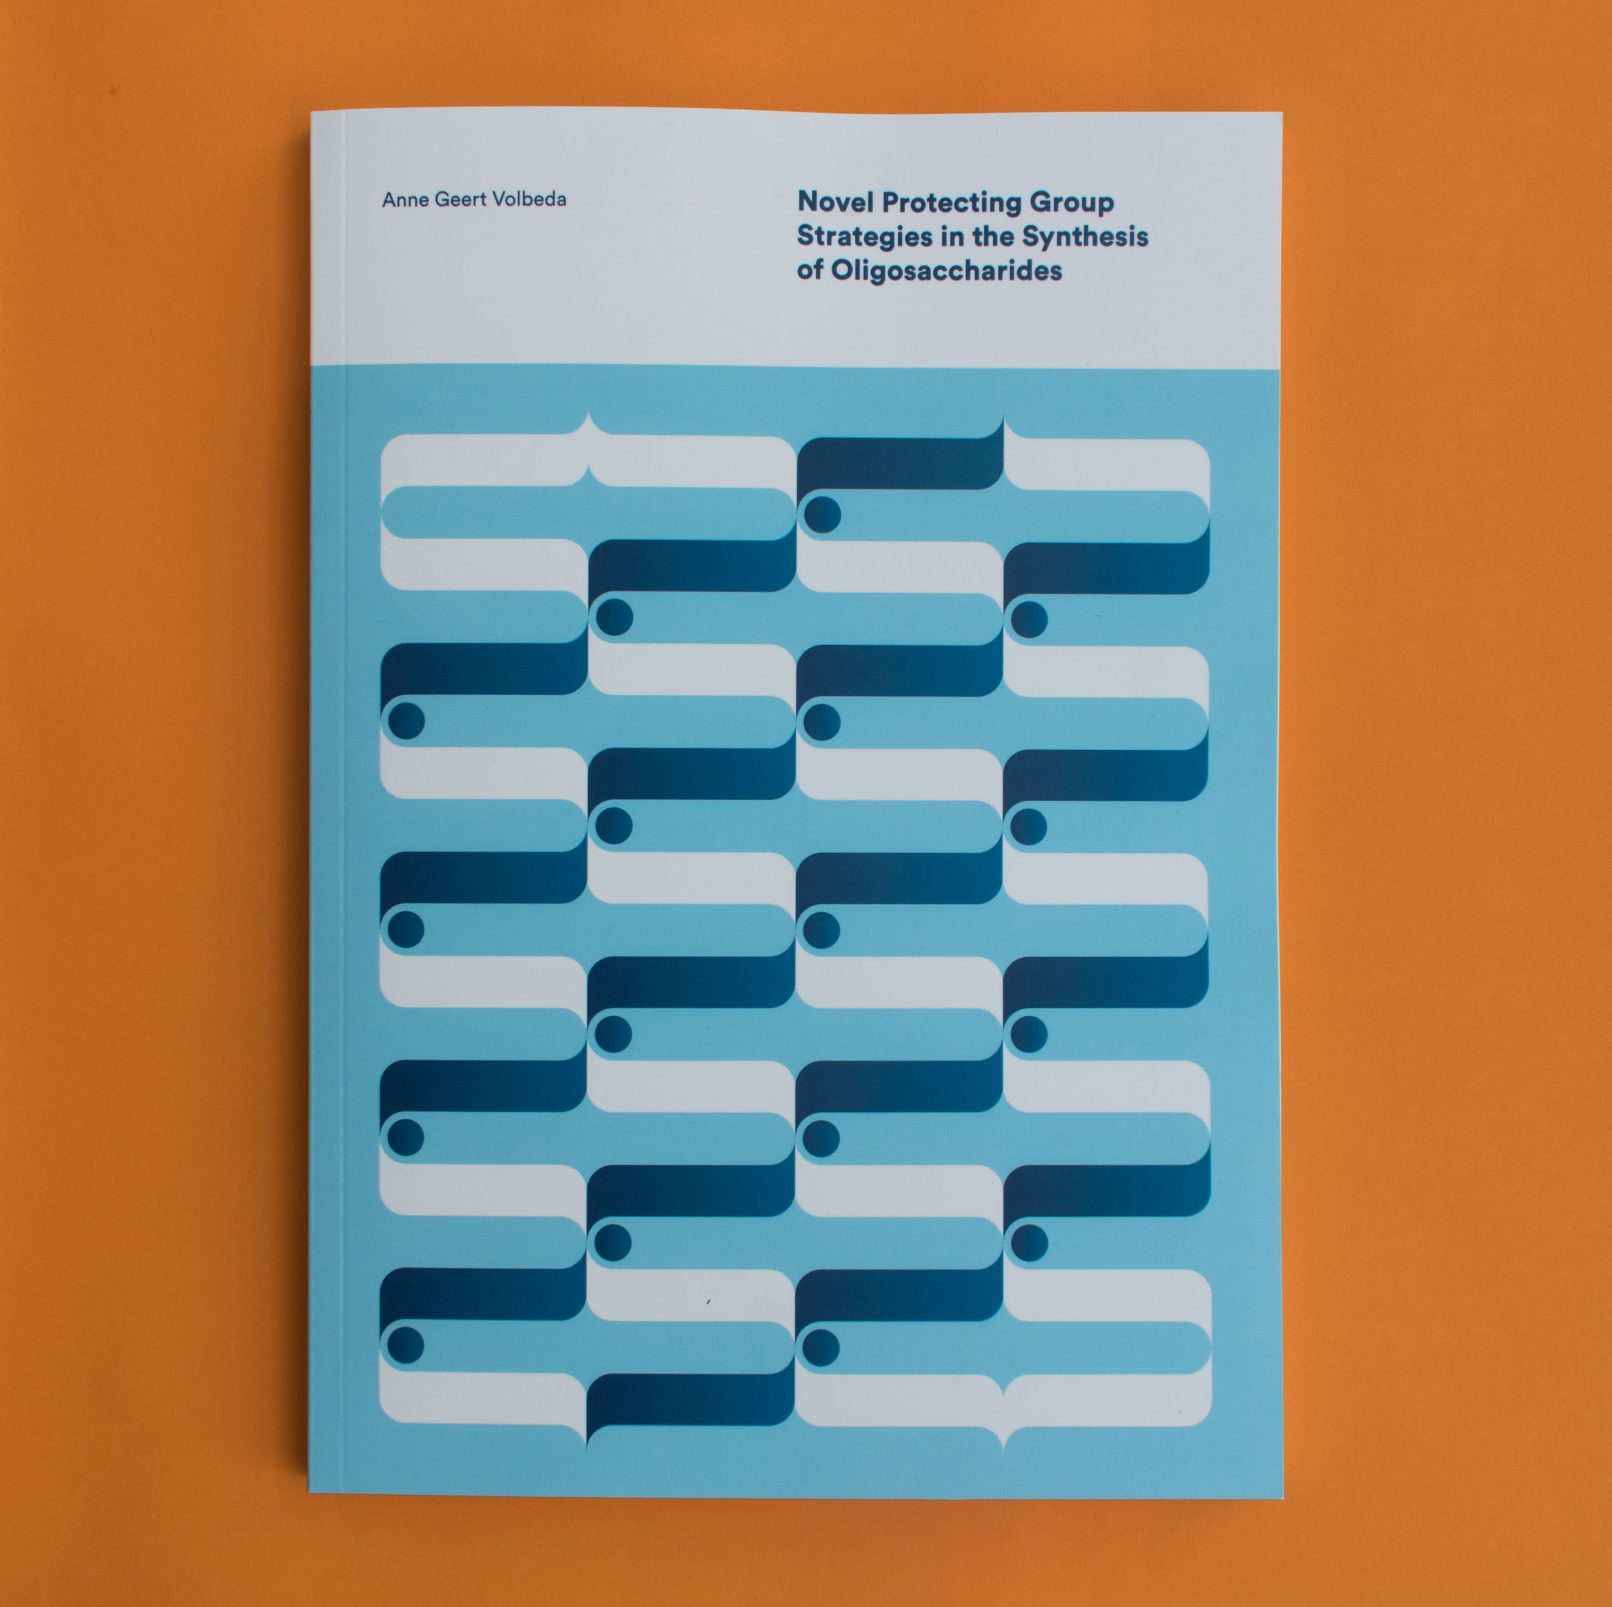 Gedeelte van de cover voor het proefschrift van Anne Geert Volbeda op een oranje achtergrond.